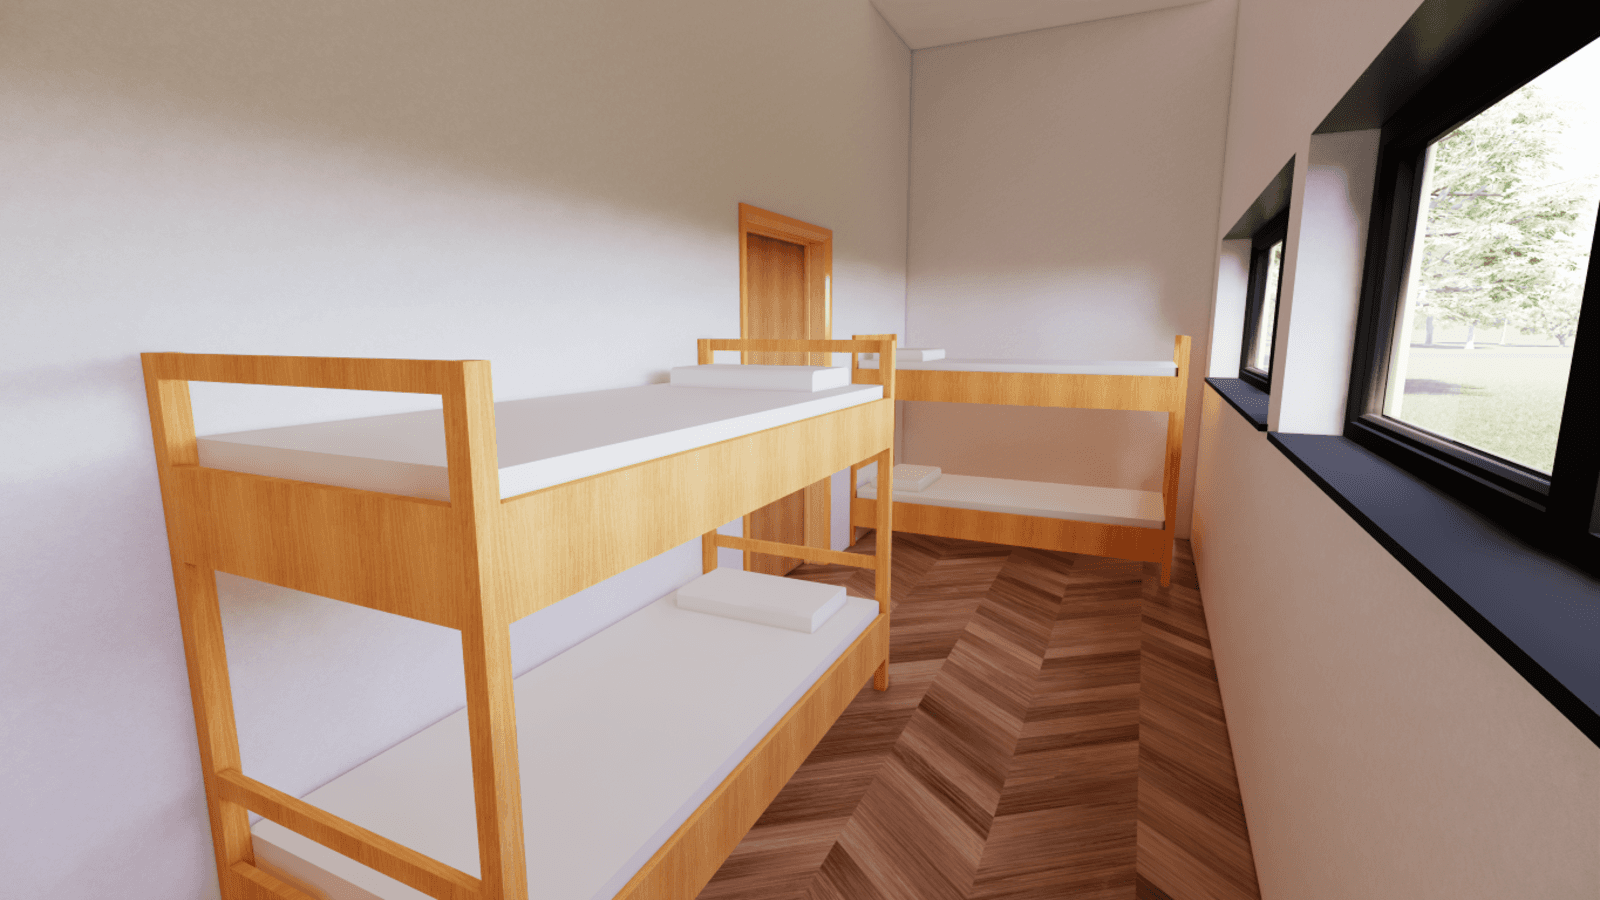 Leader / Staff Bunk Room (4 beds)